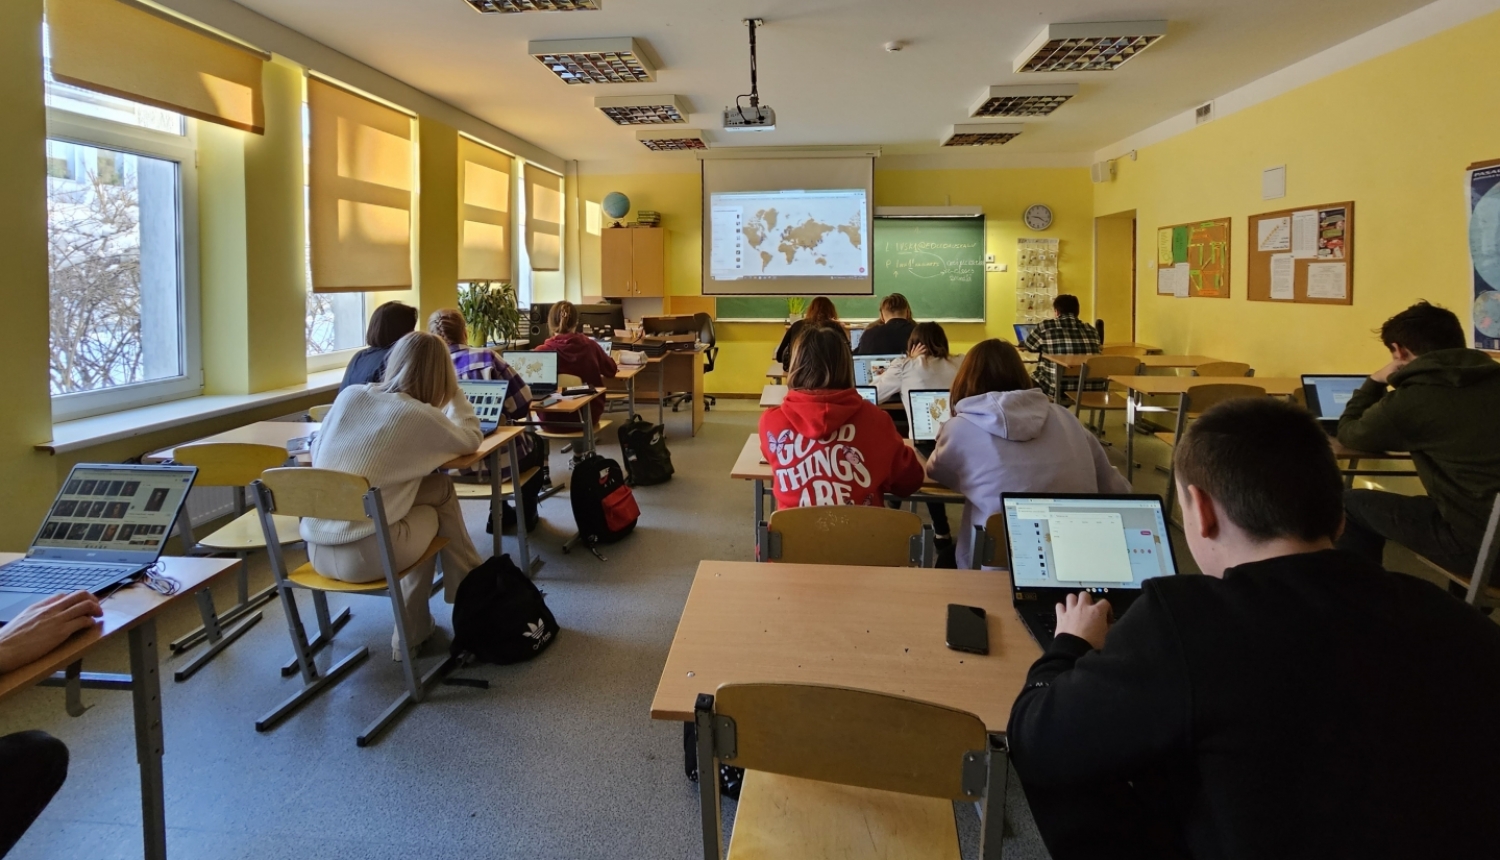 Pirmie projekta datori Bauskas novada izglītības iestādēs, tostarp Iecavas vidusskolā, nonāca jau pagājušajā mācību gadā. 